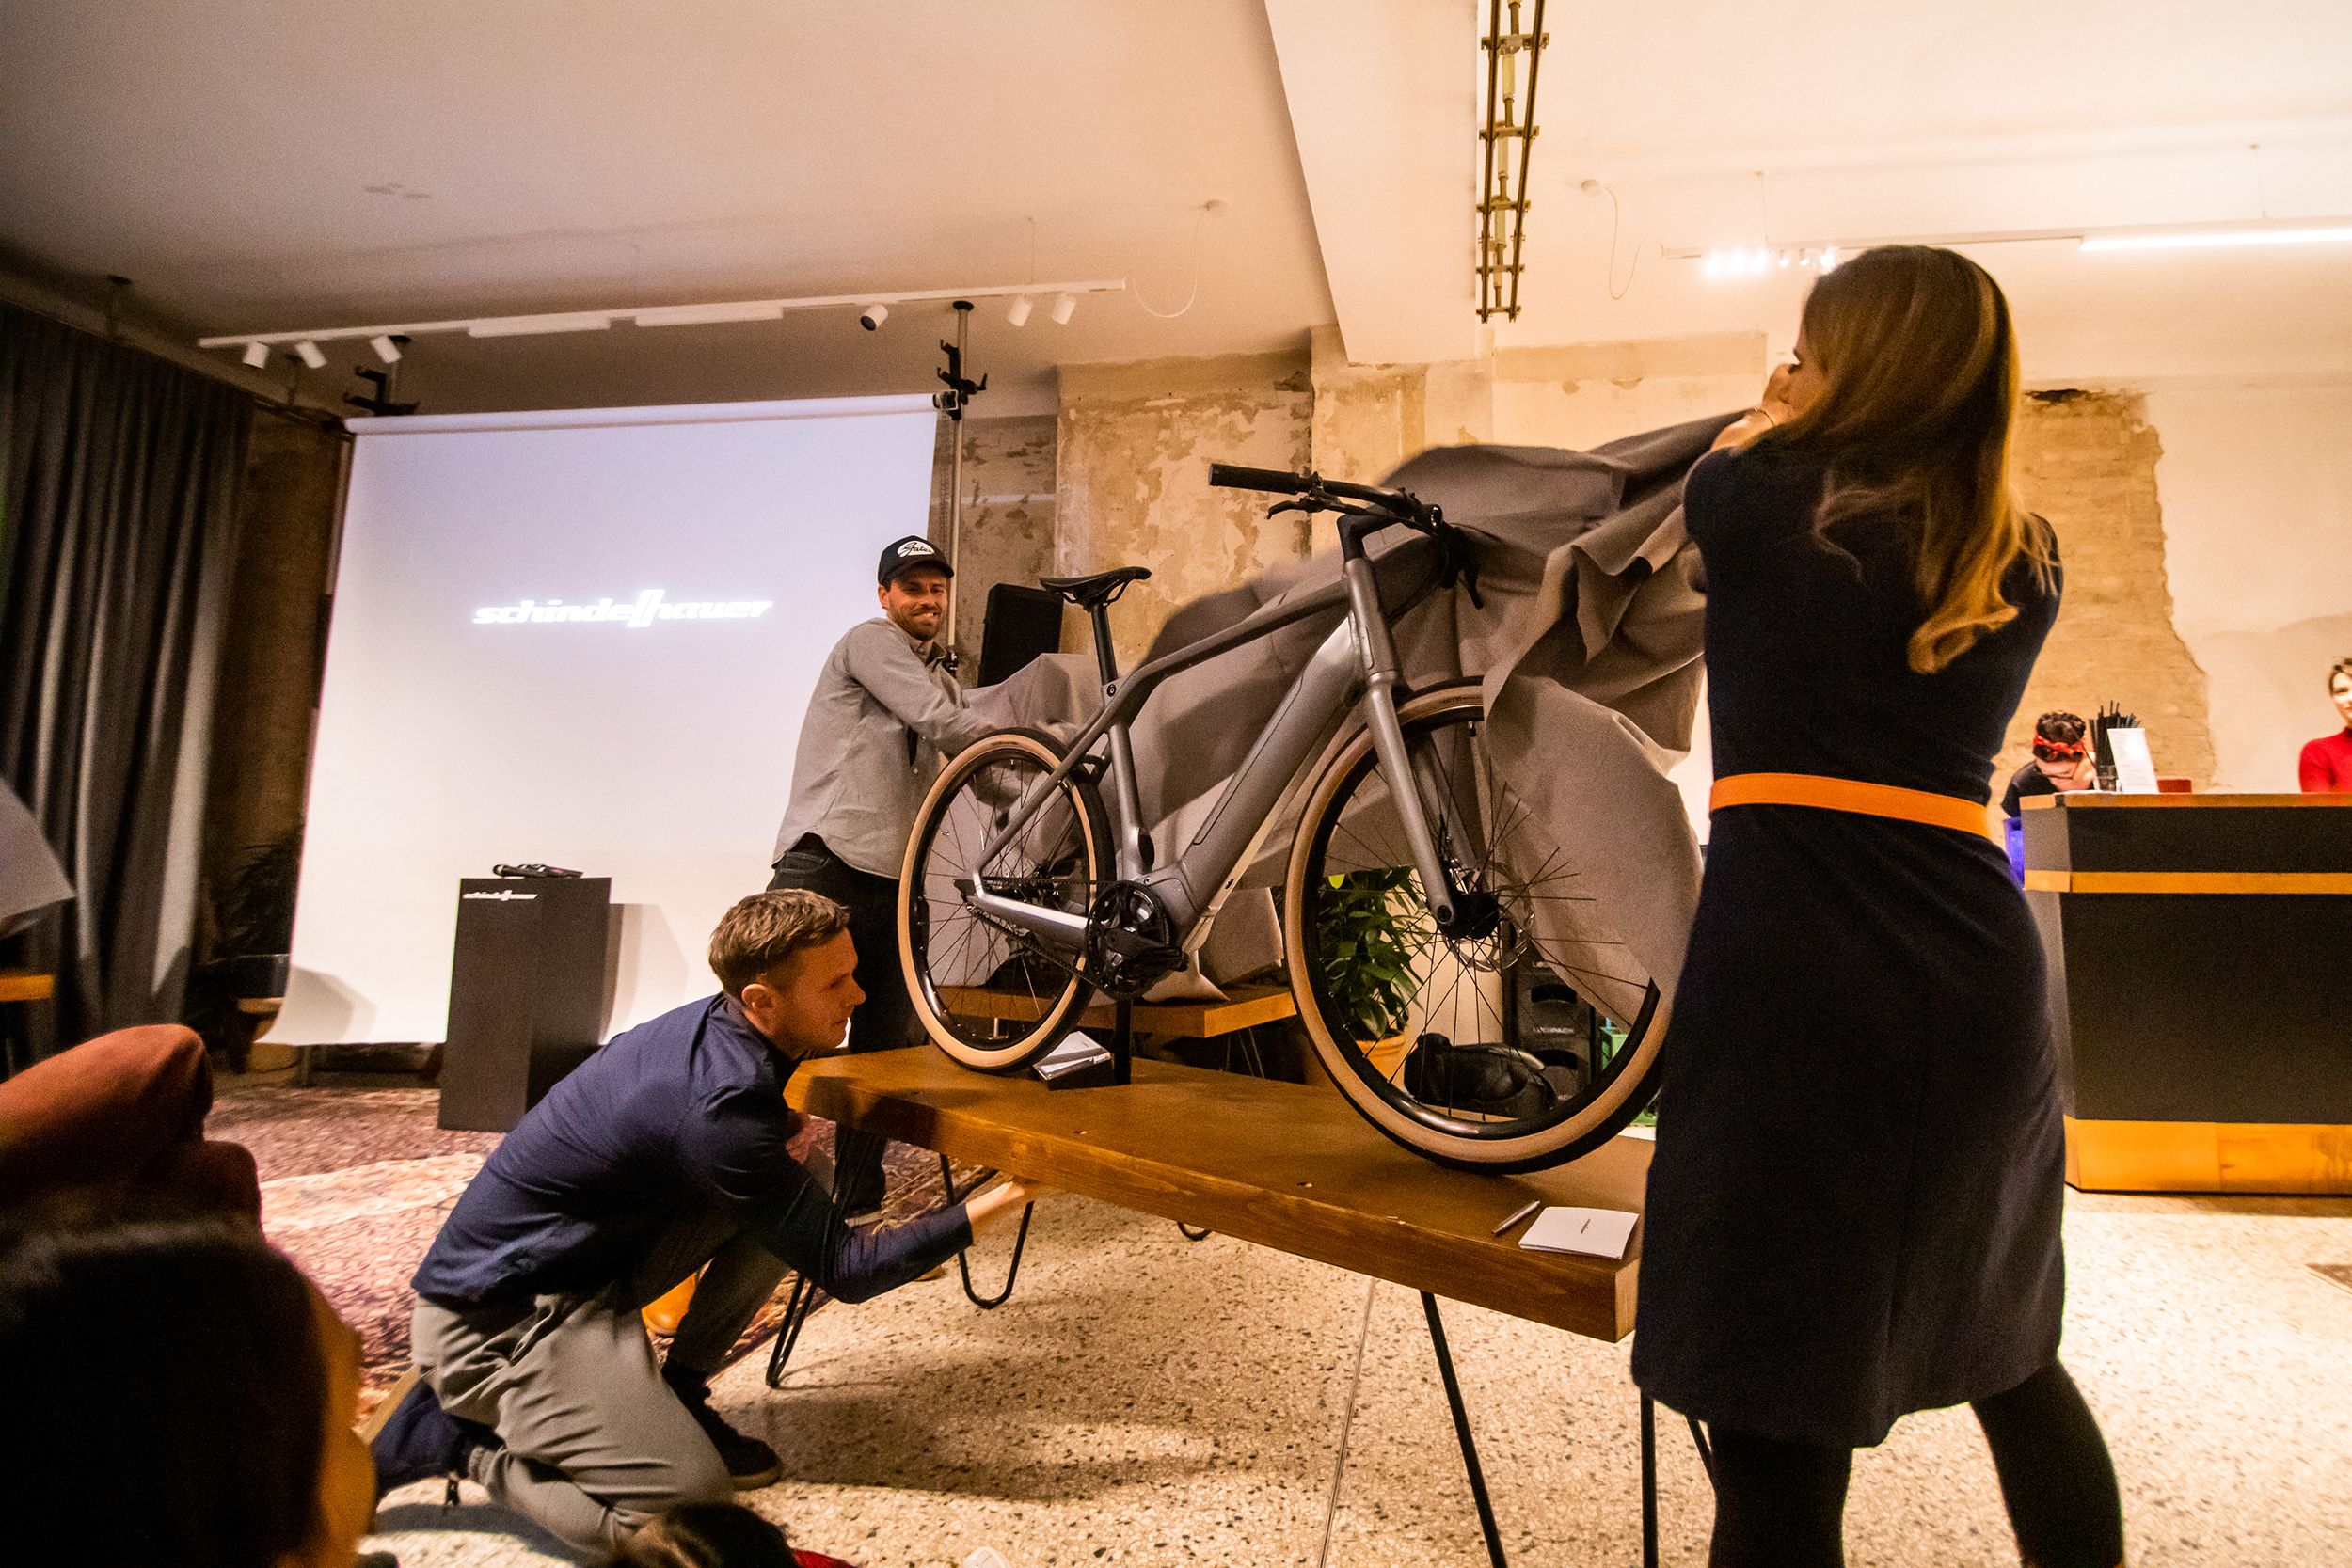 Rückblick: E-Bike Launch Event - Am 15. November 2018 war es so weit: Nach mehrjähriger Entwicklungszeit präsentierten wir unsere neue E-Bike-Produktlinie der Öffentlichkeit.